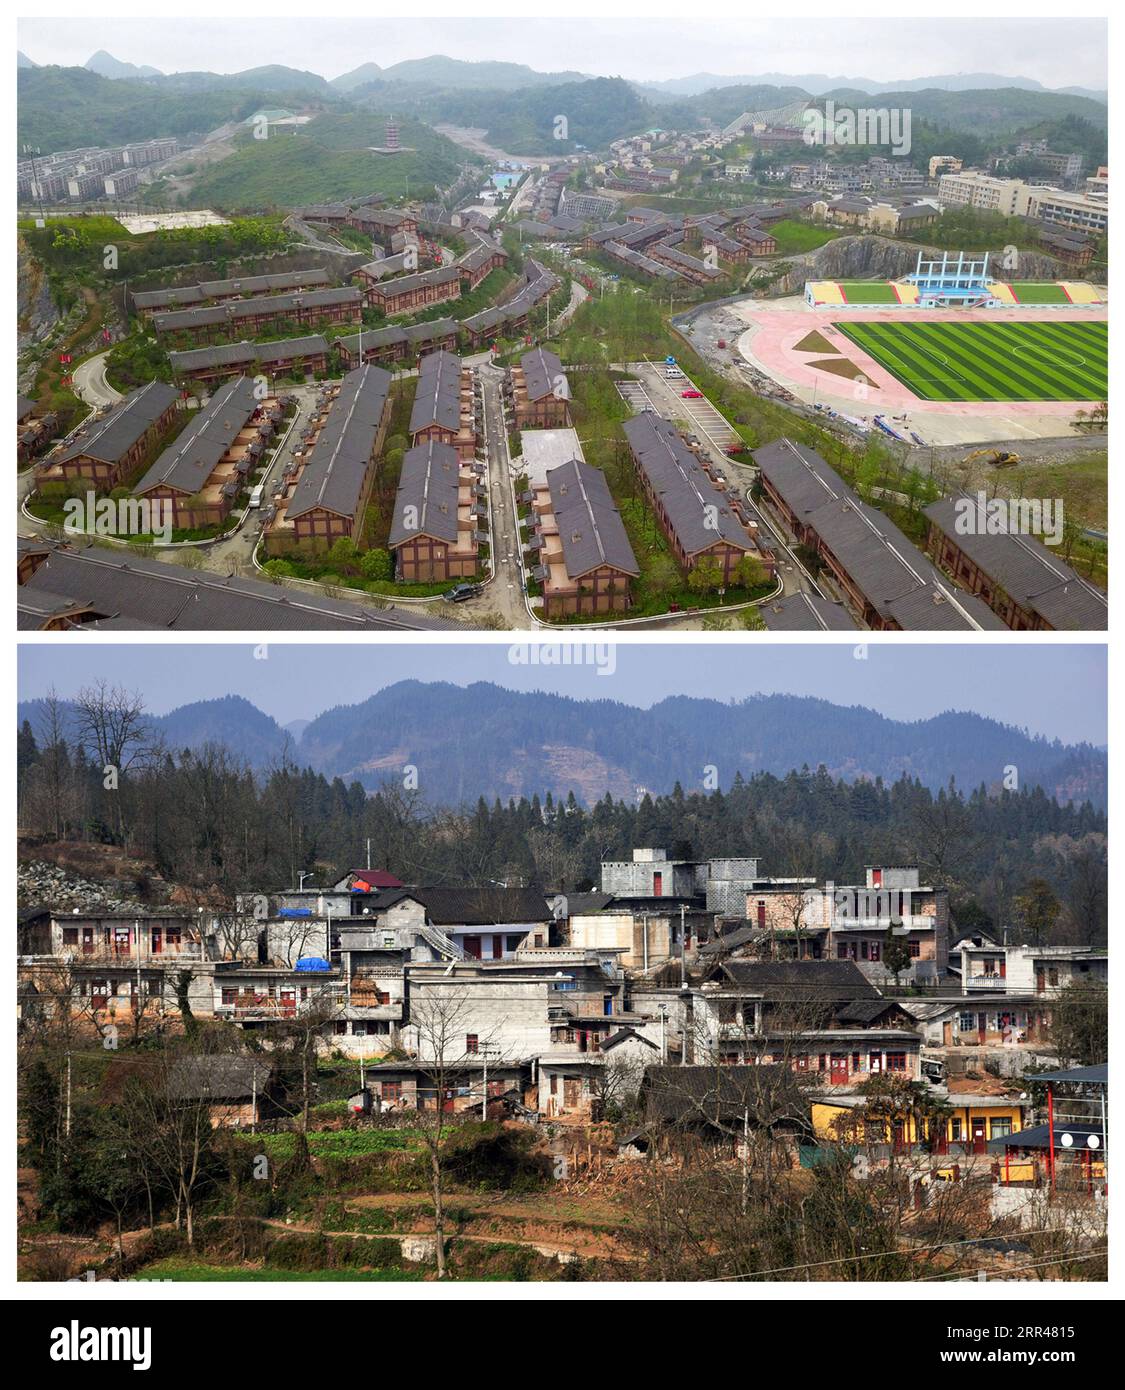 201124 -- GUIYANG, 24. November 2020 -- auf diesem Kombi-Foto zeigt der obere Teil, aufgenommen am 6. Juni 2019 von, das neue Aussehen der Stadt Ameiqituo und der untere Teil, aufgenommen am 15. Januar 2018 von Chen Yalin, zeigt das Dorf Sanbao vor dem Umzug im Qinglong County, Provinz Guizhou im Südwesten Chinas. China hat die Leistung erreicht, alle verbleibenden Grafschaften von der Armutsliste des Landes zu streichen. Die letzten neun verarmten Grafschaften, alle in der südwestchinesischen Provinz Guizhou, haben die absolute Armut beseitigt, teilte die Provinzregierung am Montag mit. Das bedeutet, dass alle 832 armen Countys i registriert haben Stockfoto